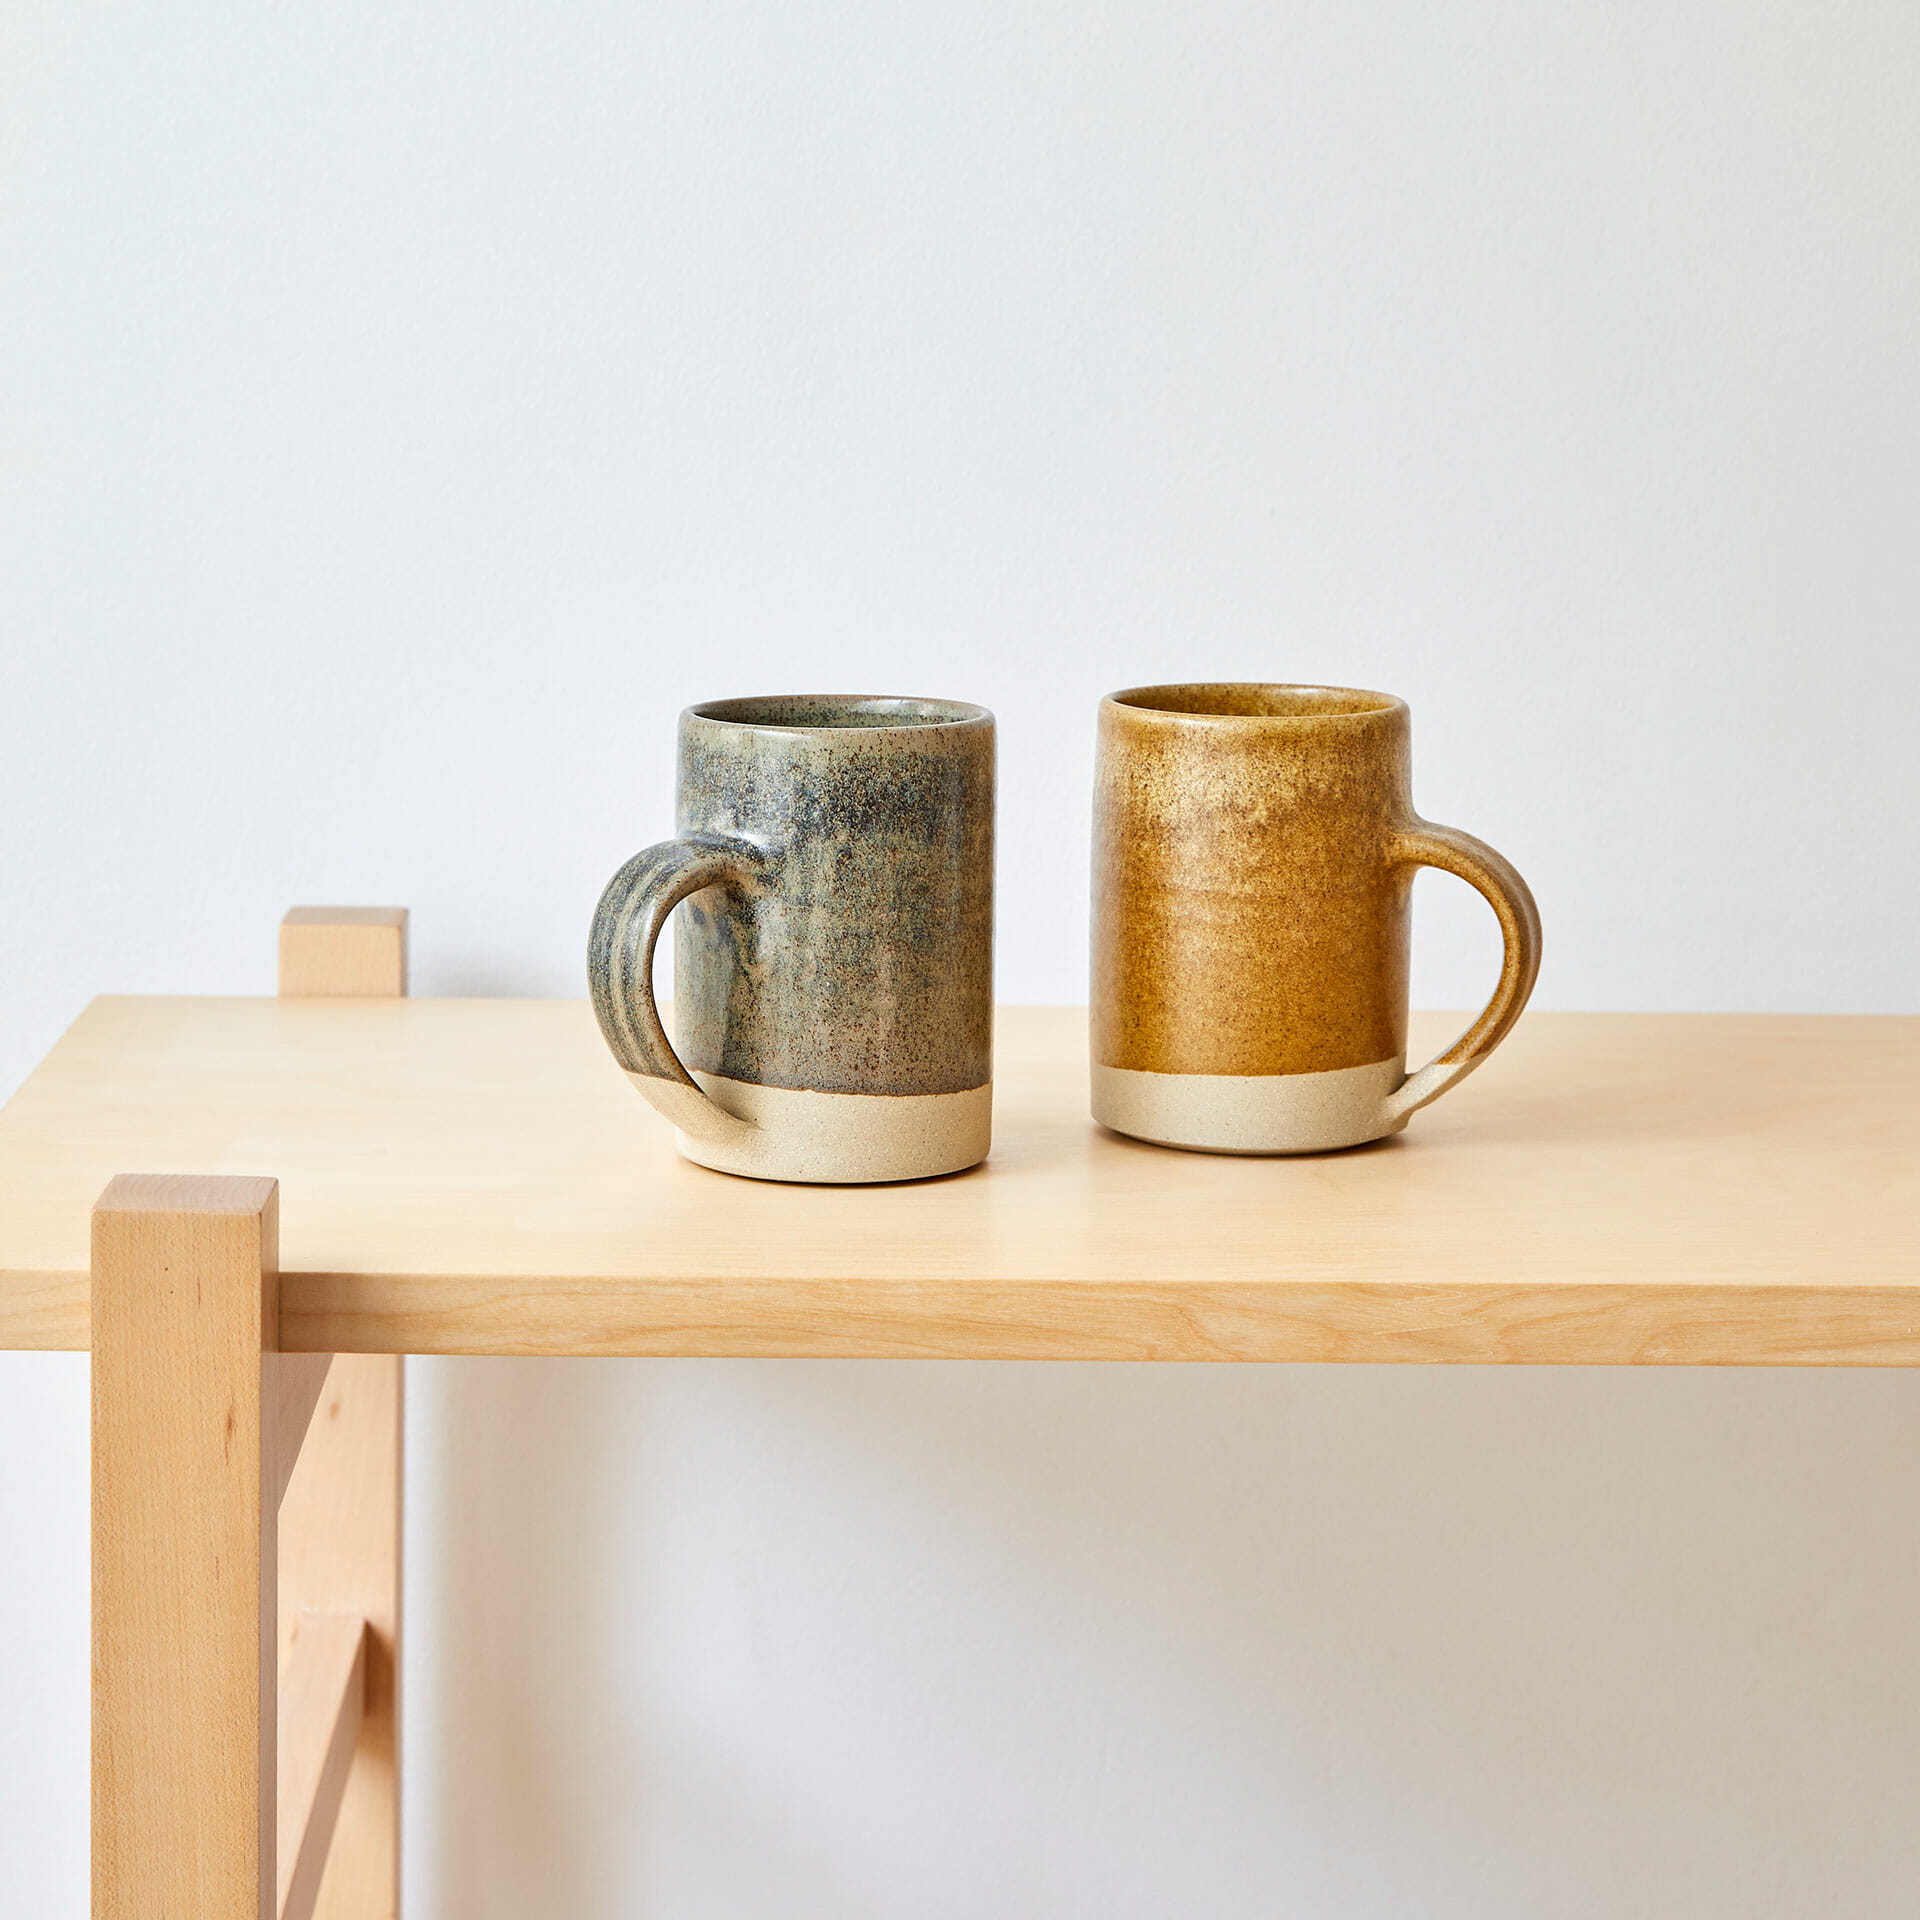 dipped-mugs-ceramics